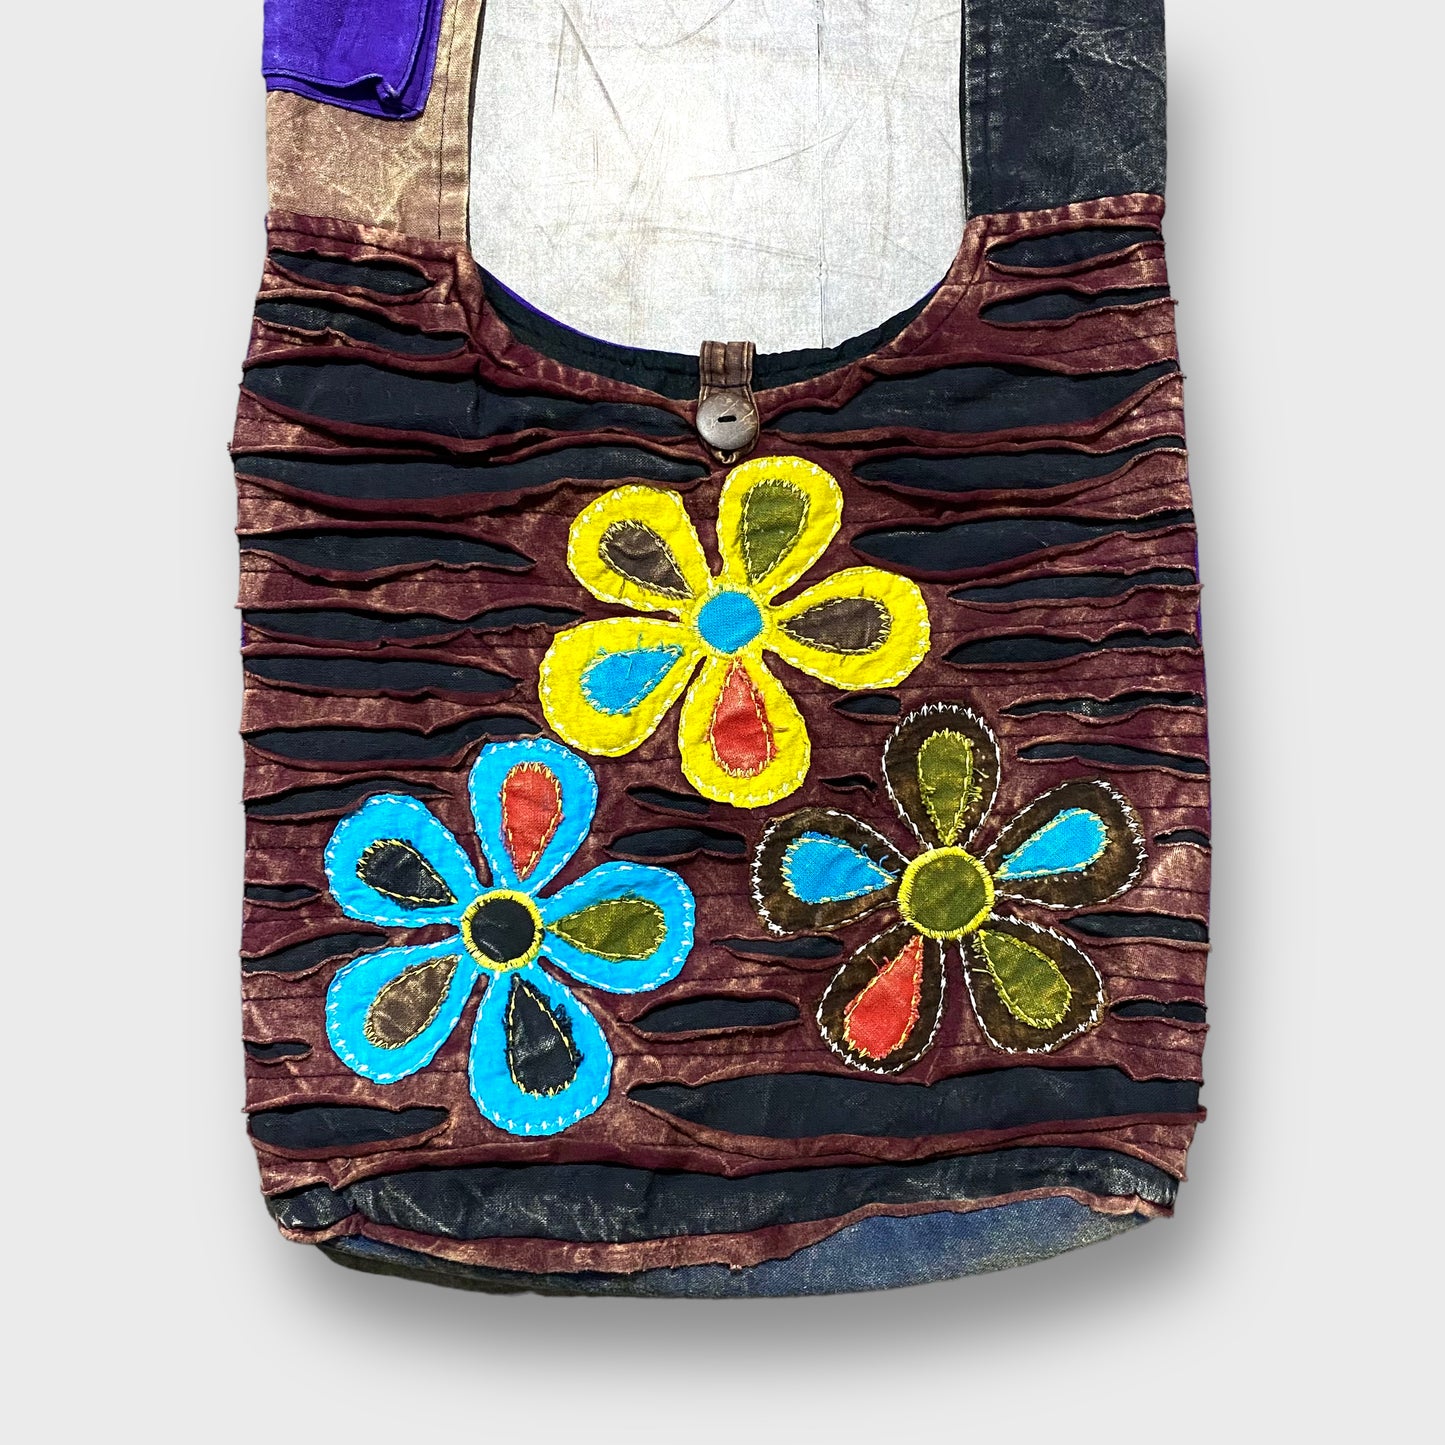 Flower design shoulder bag